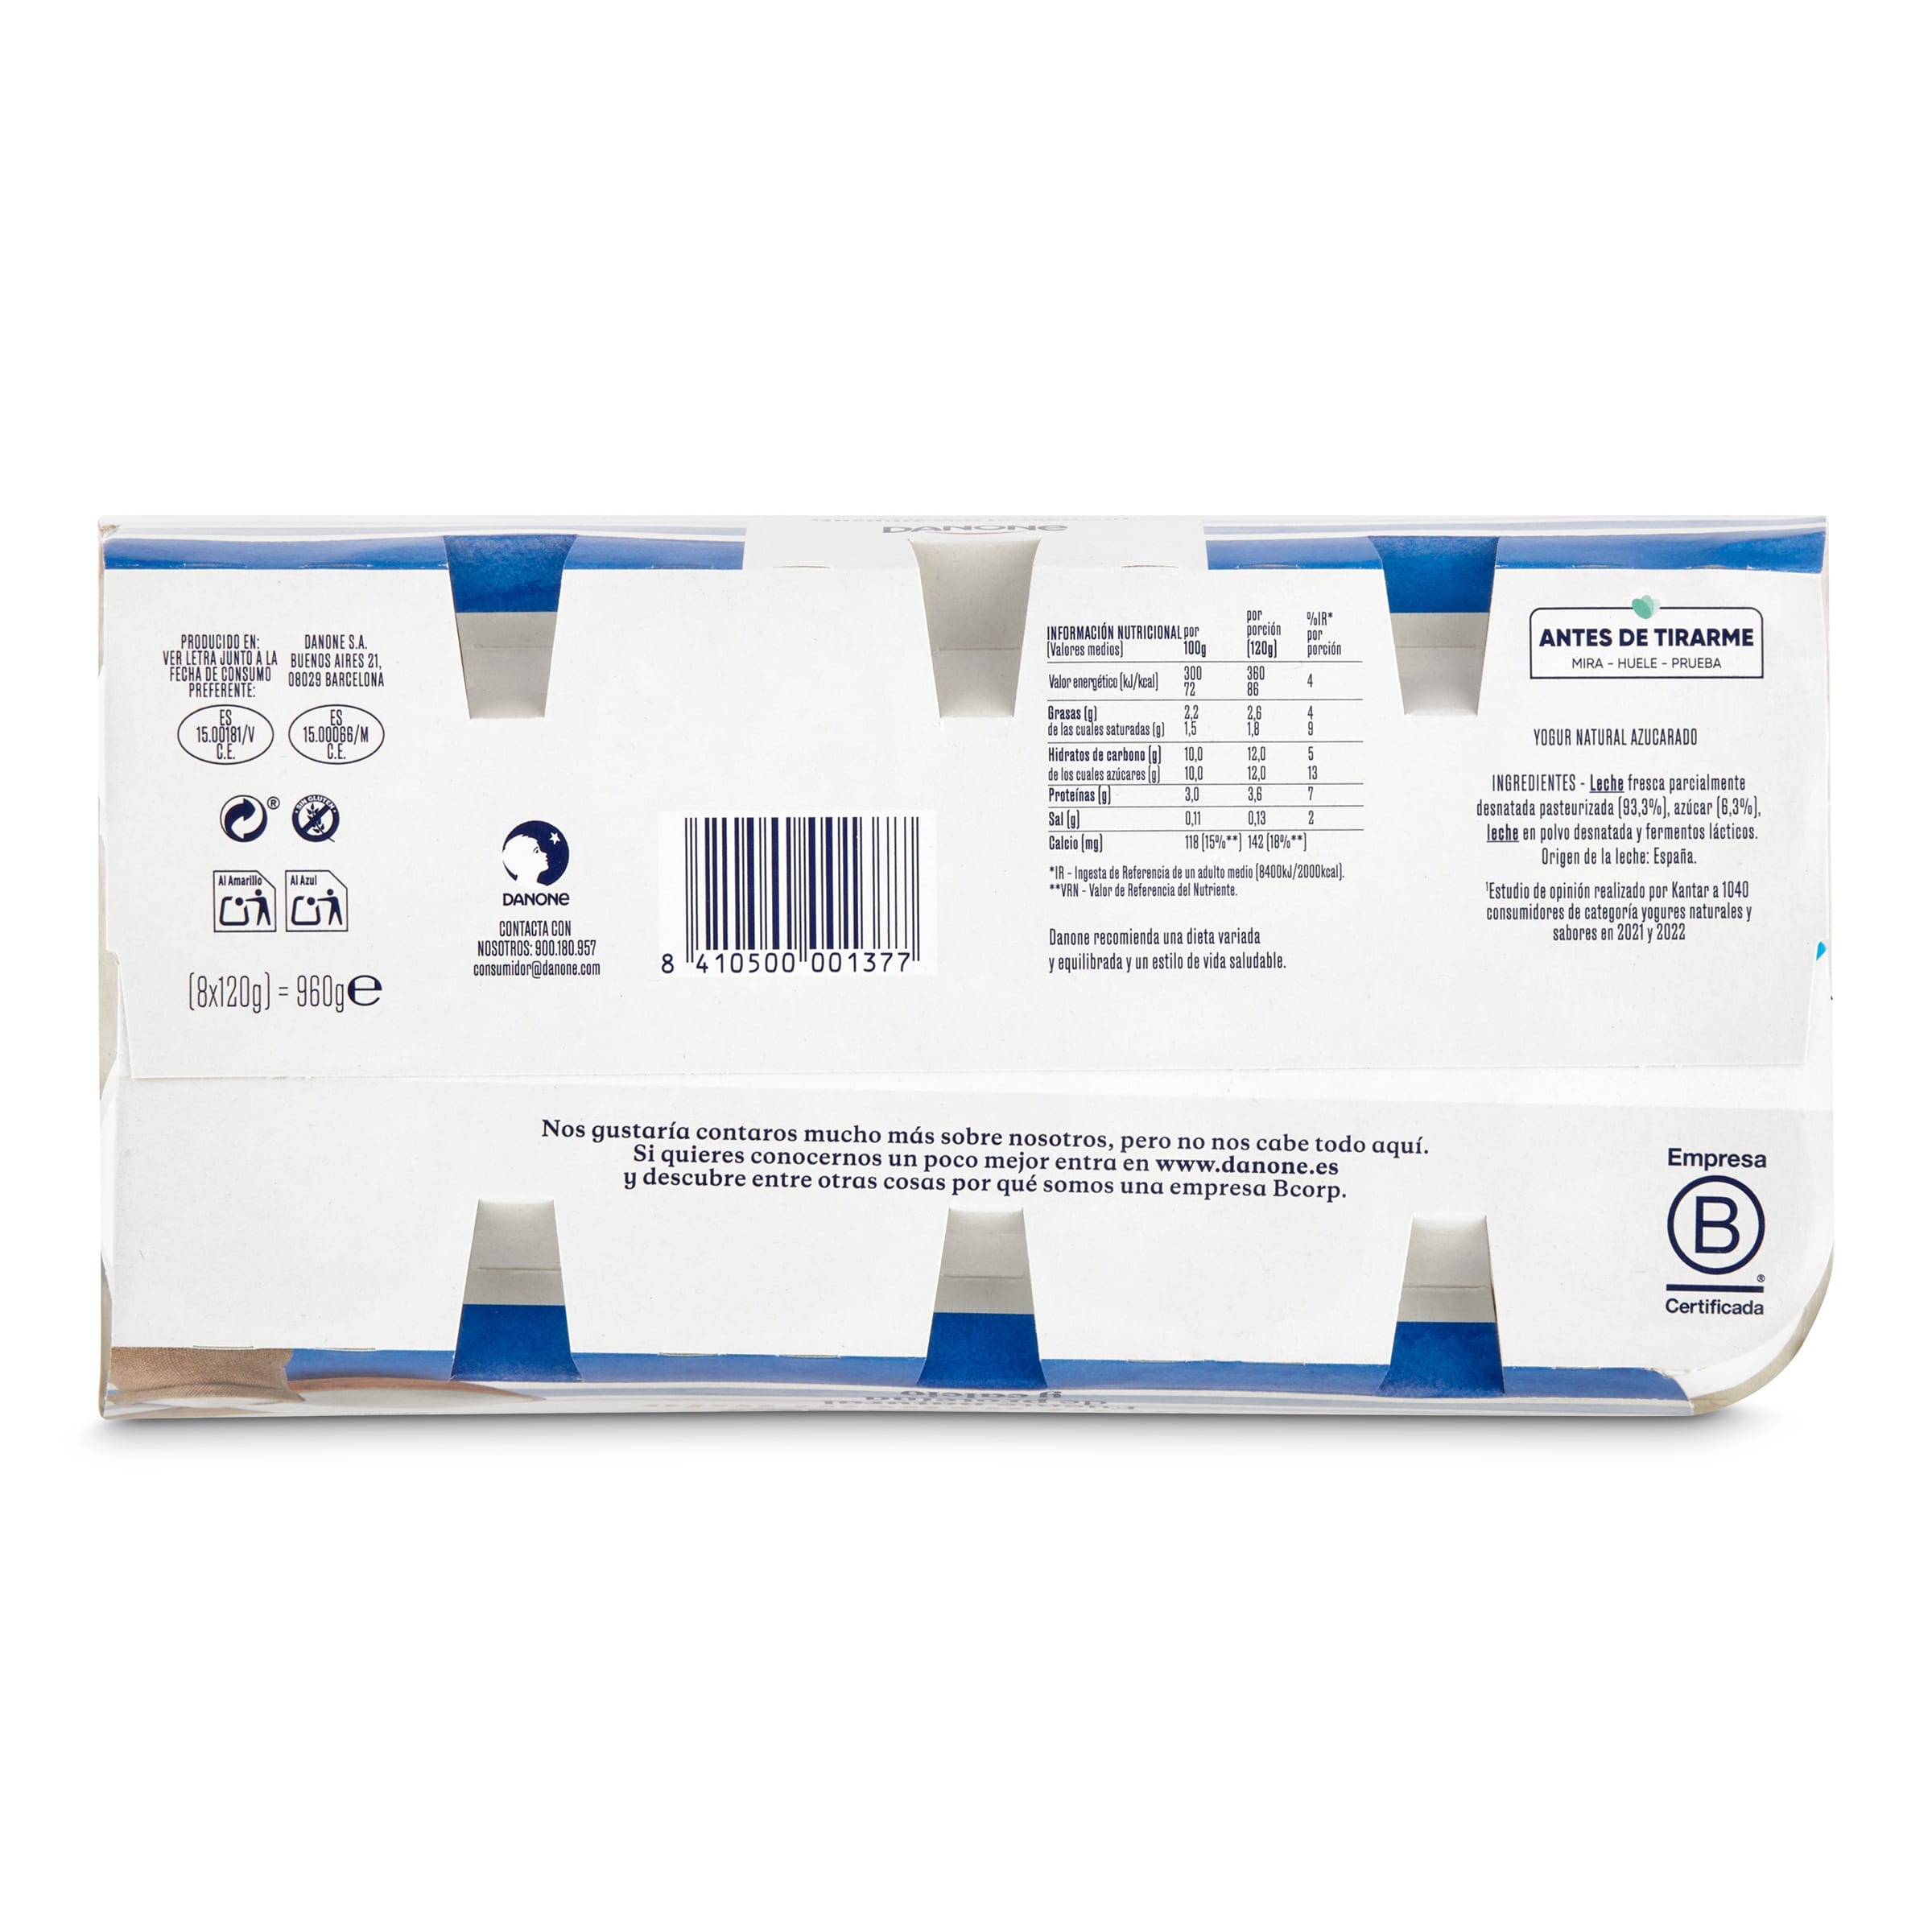 Yogur natural Danone pack 8 x 120 g - Supermercados DIA